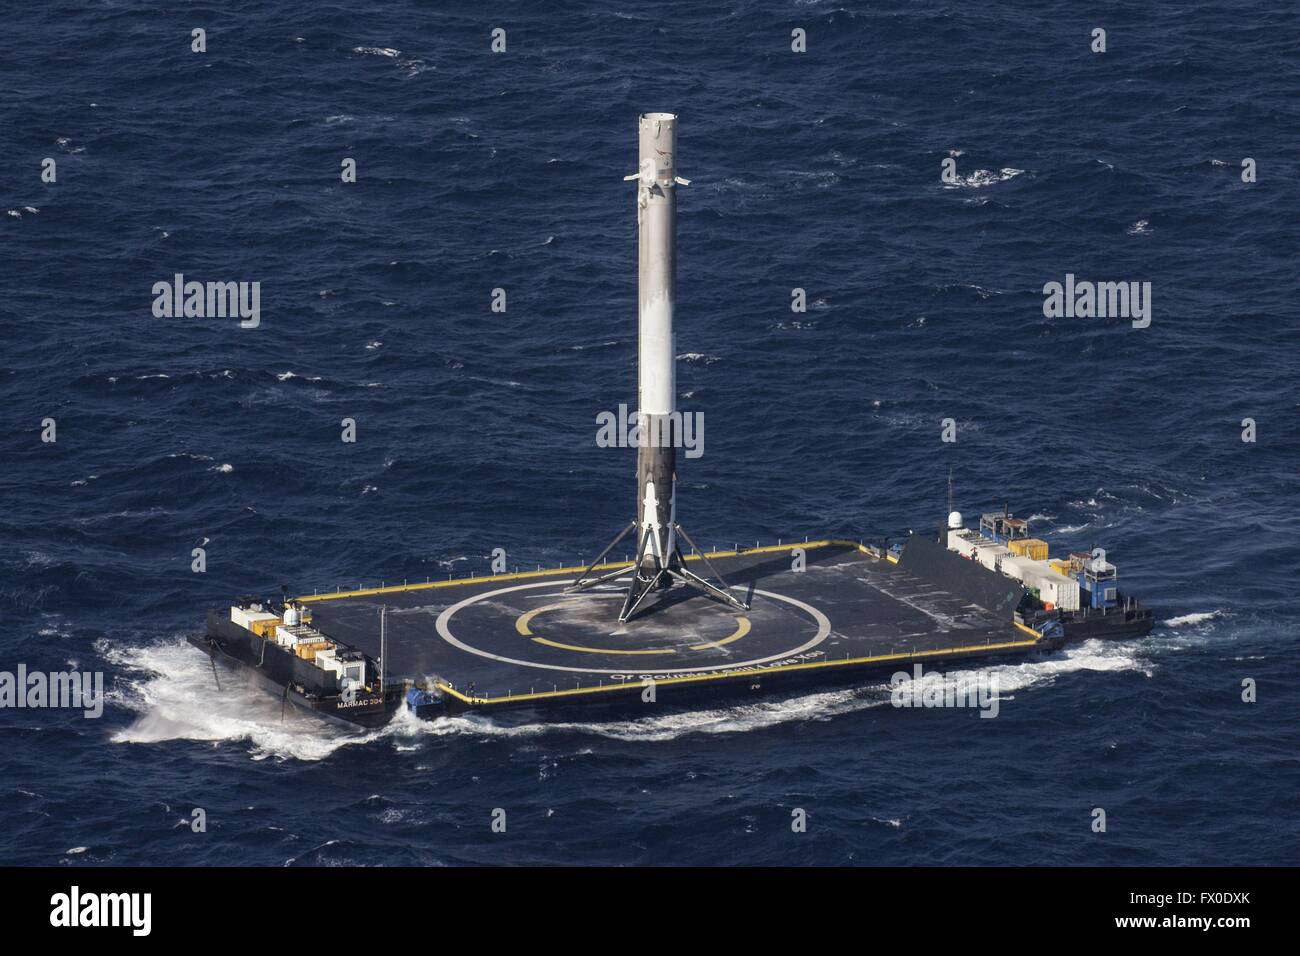 Die SpaceX Falcon 9 wiederverwendbare Rakete in perfekter Lage nach der Landung auf einer schwimmenden Plattform Landung 8. April 2016 in den Atlantischen Ozean. Die CRS-8-Mission erfolgreich angetrieben die Dragon-Kapsel zur internationalen Raumstation ISS und dann zurück auf die Droneship zum ersten Mal. Stockfoto